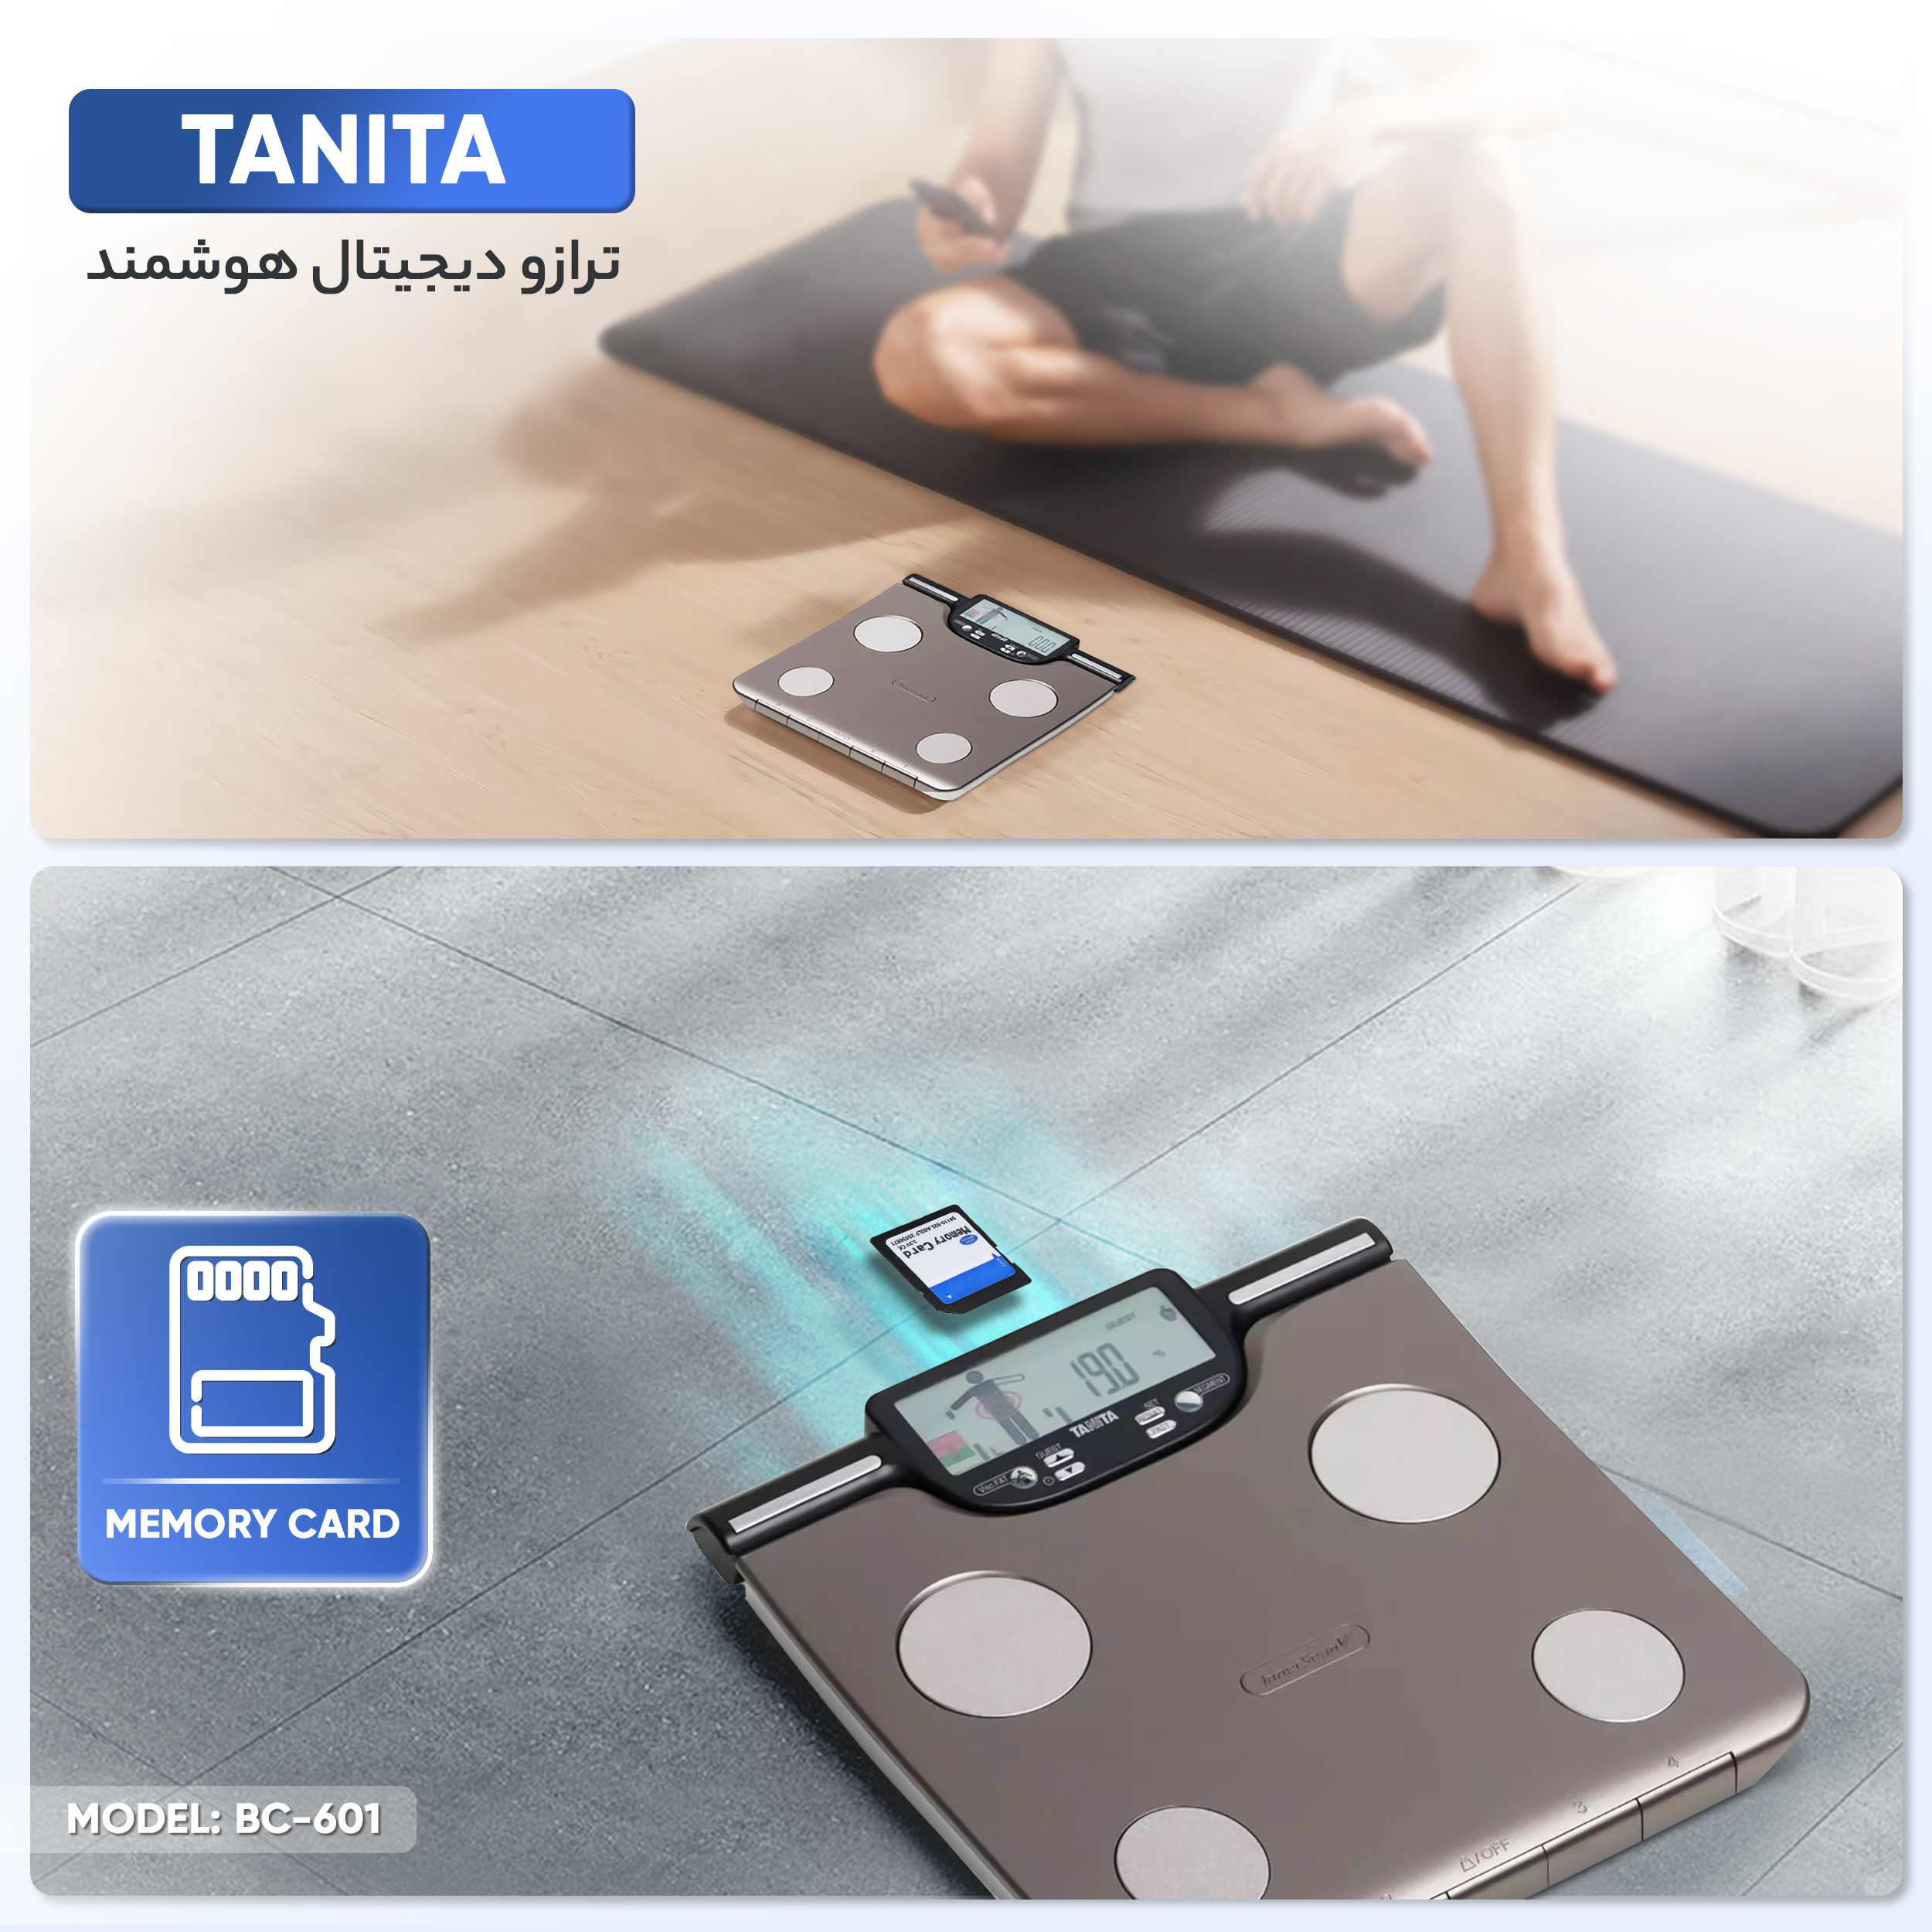 ترازو دیجیتال هوشمند تانیتا مدل BC-601 -  - 7